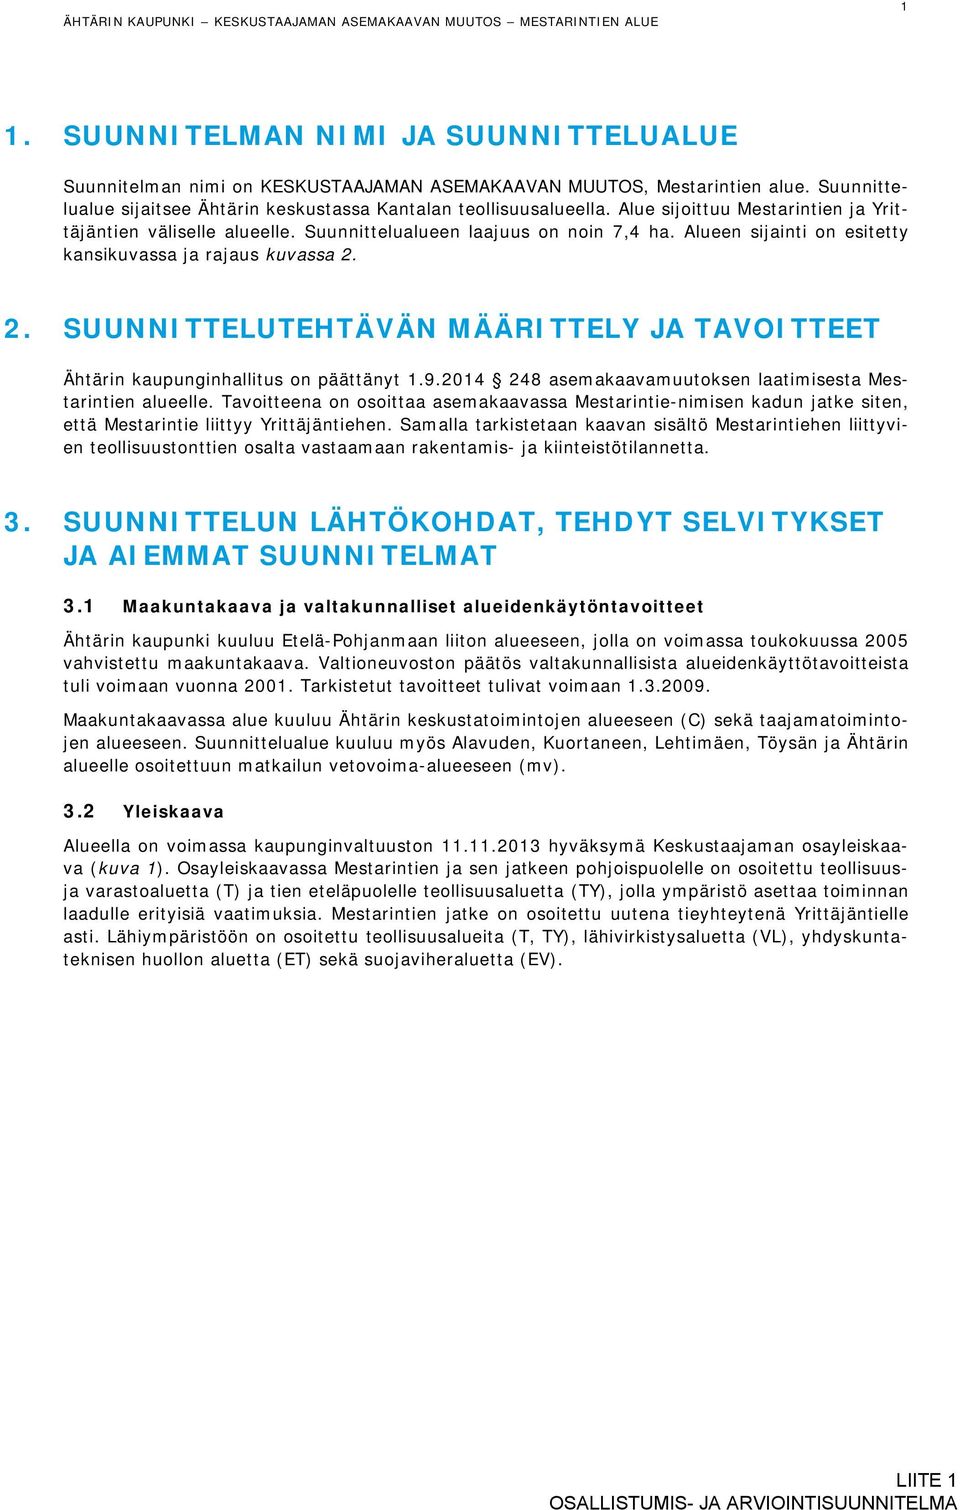 Alueen sijainti on esitetty kansikuvassa ja rajaus kuvassa 2. 2. SUUNNITTELUTEHTÄVÄN MÄÄRITTELY JA TAVOITTEET Ähtärin kaupunginhallitus on päättänyt 1.9.